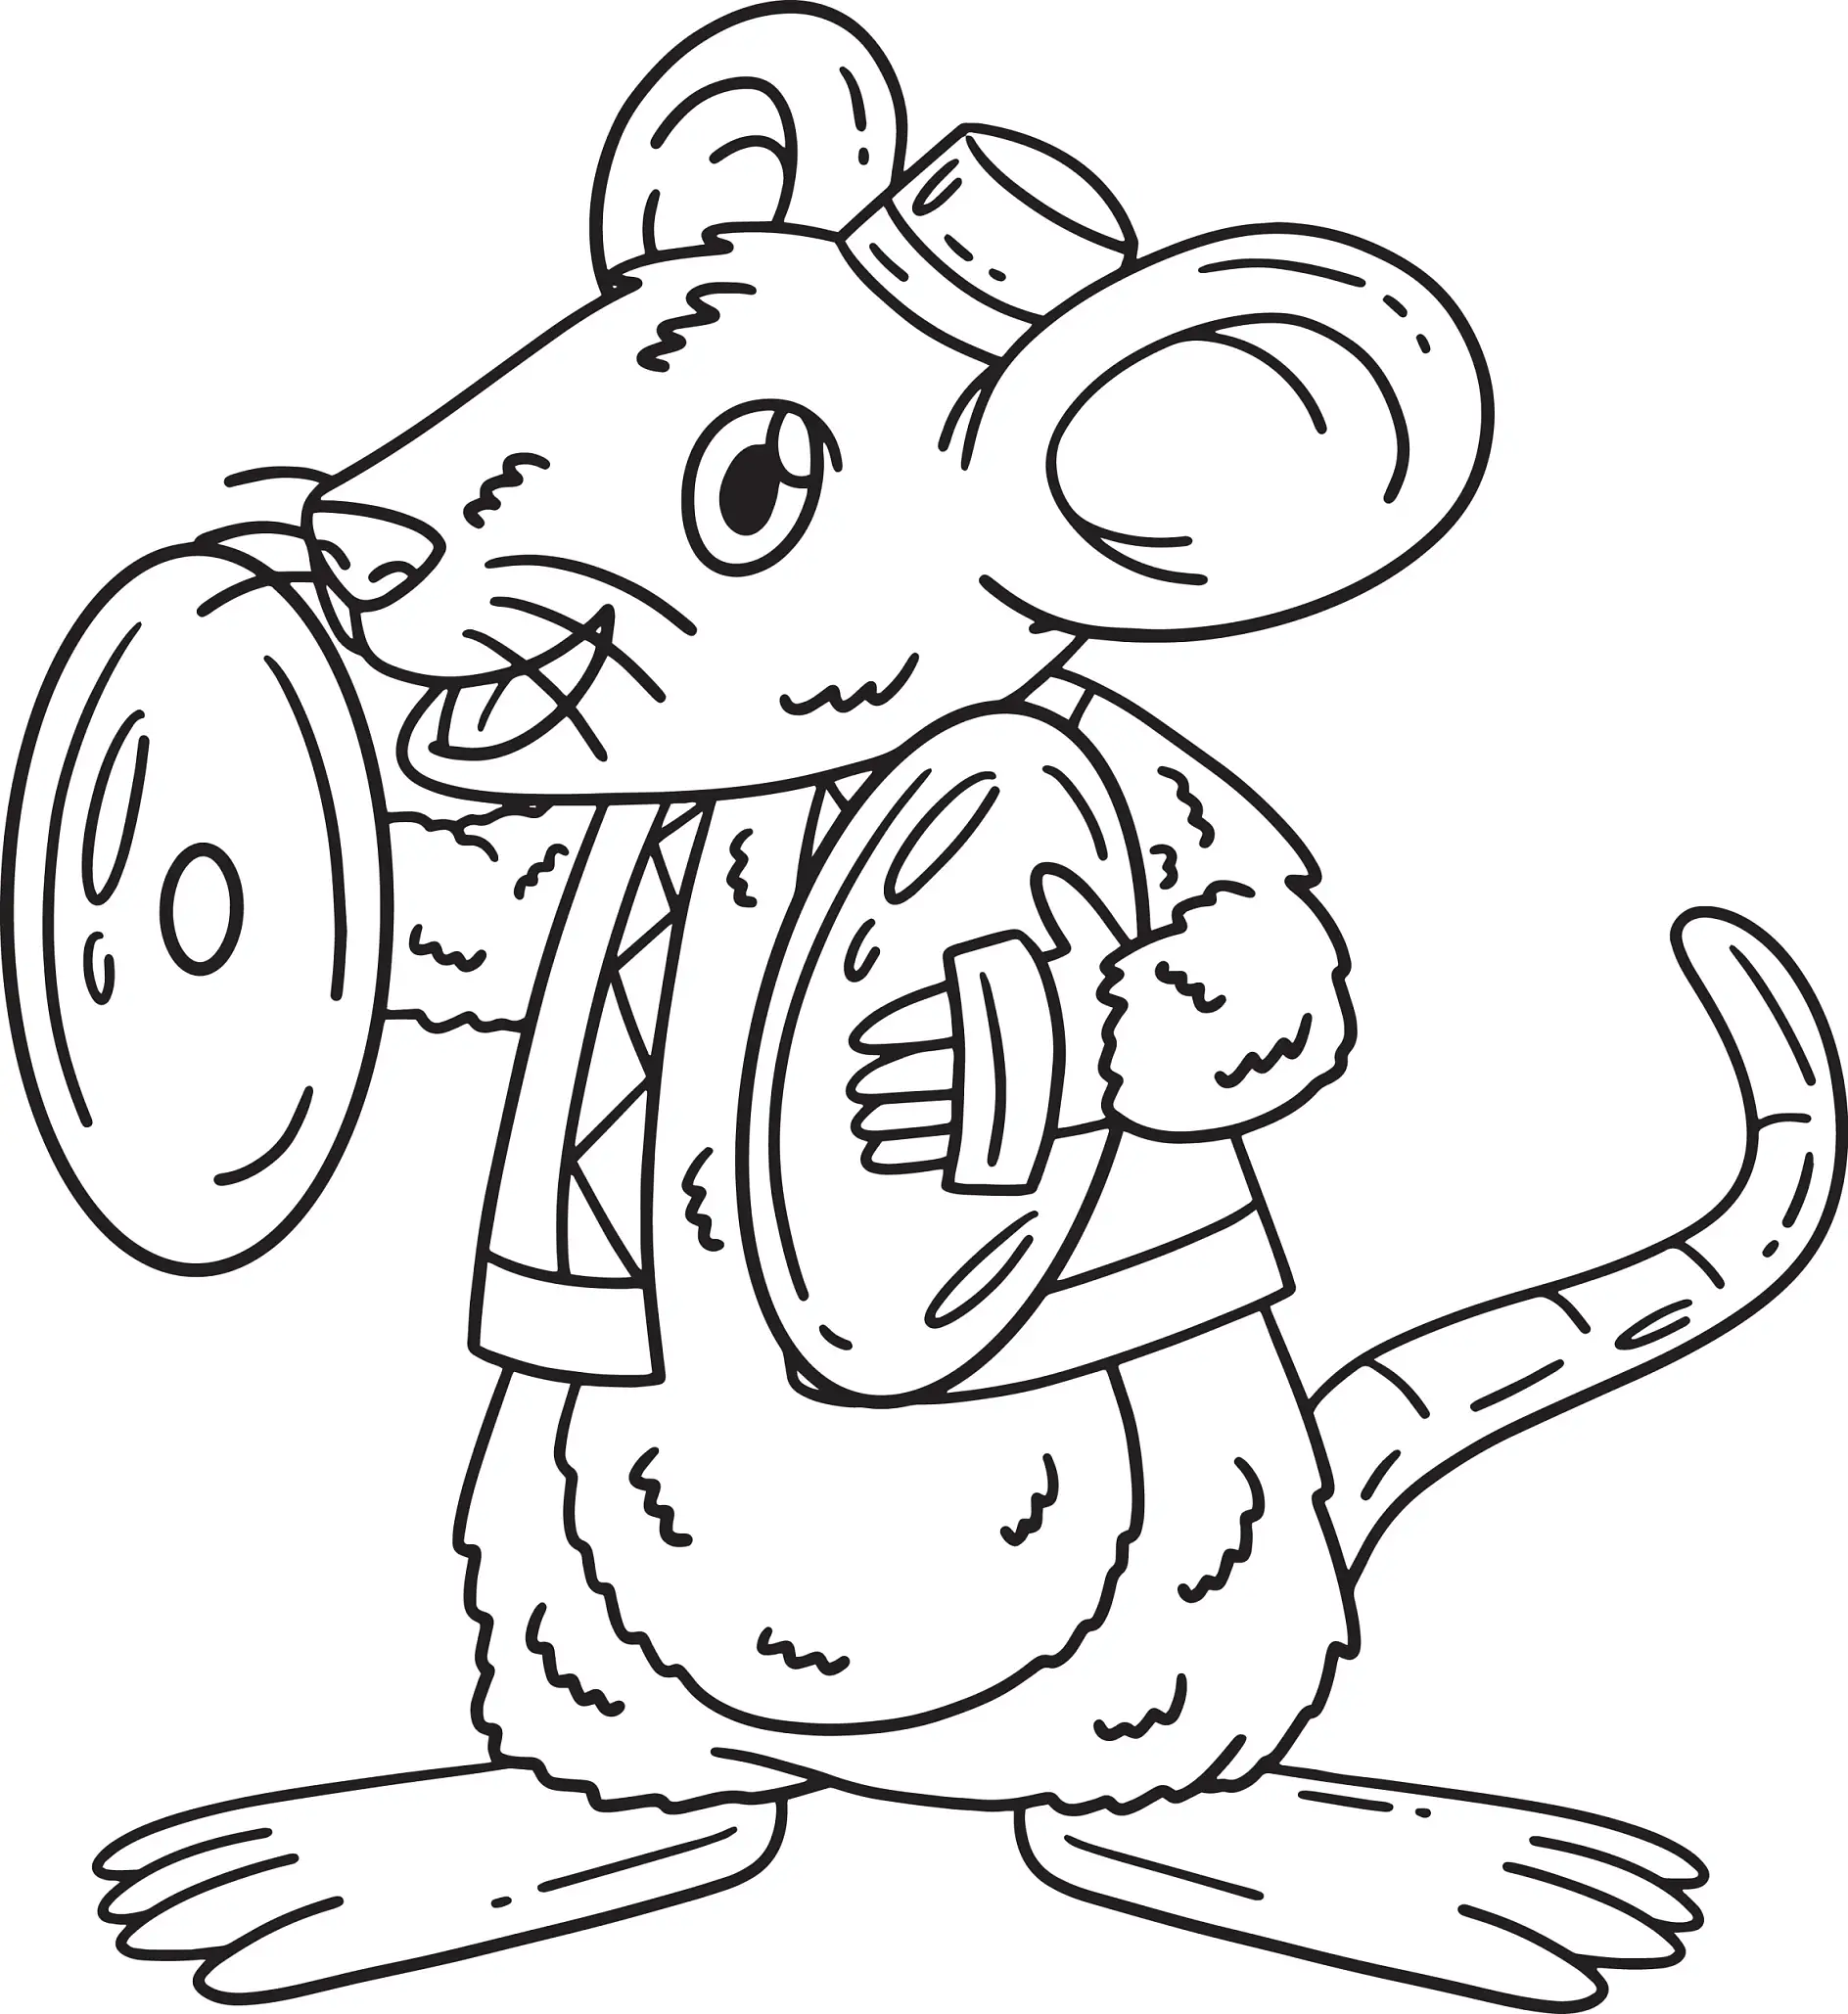 Ausmalbild Maus mit Cymbalen und Weste stehend